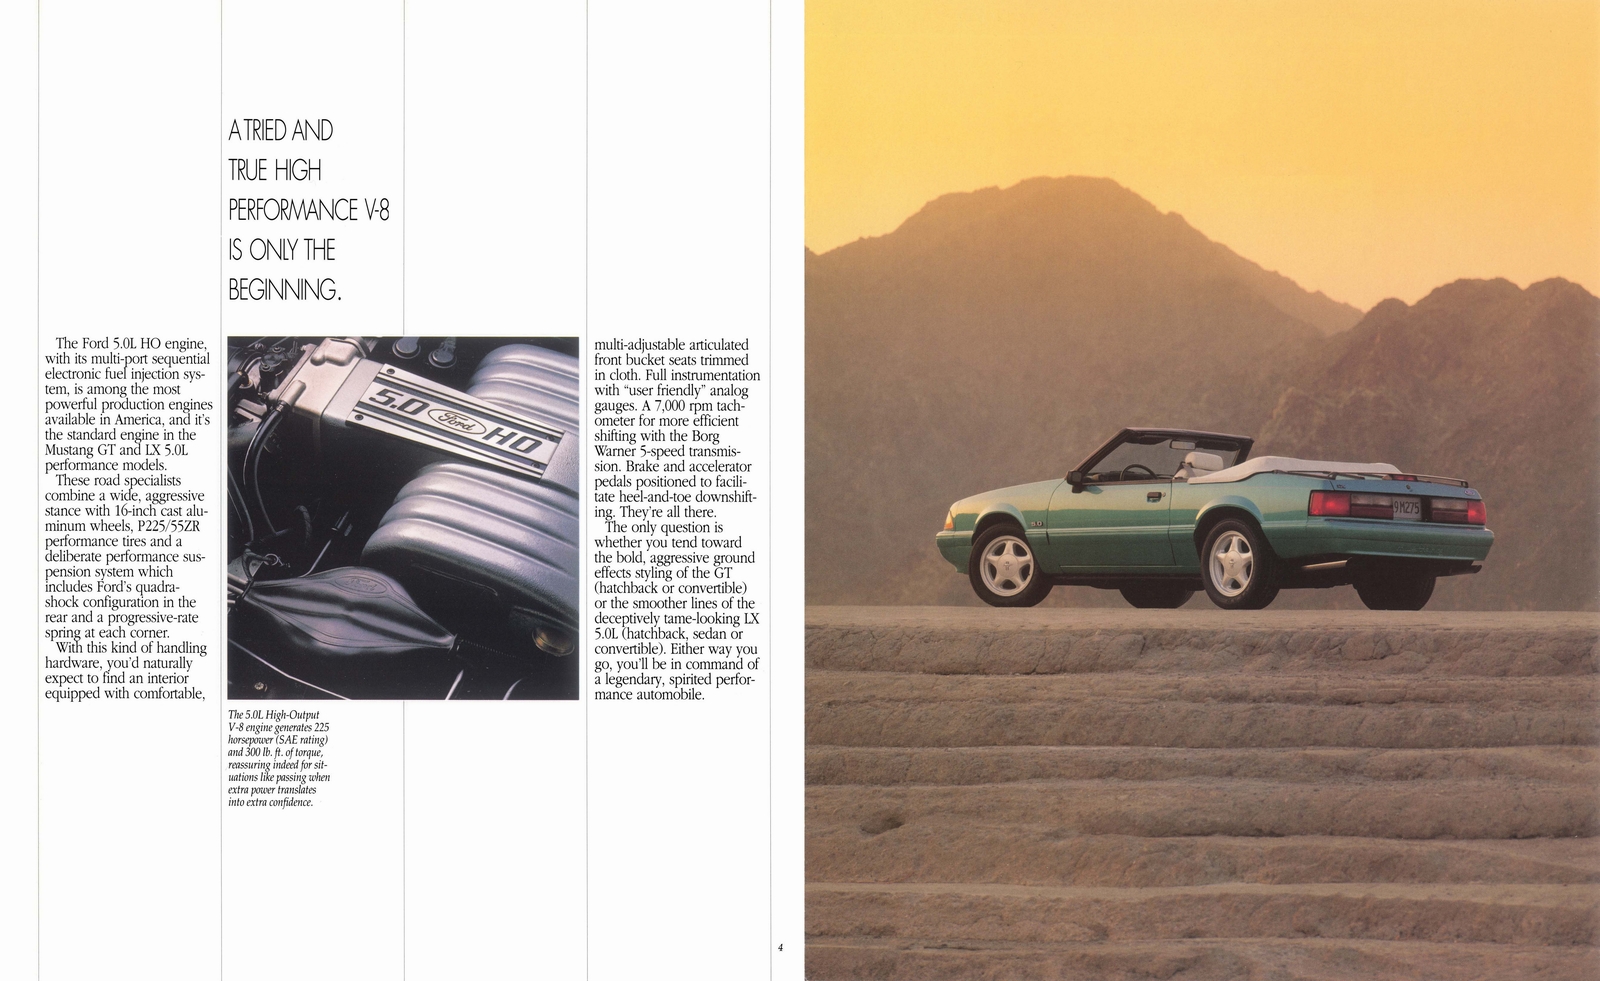 n_1992 Ford Mustang-04-05.jpg